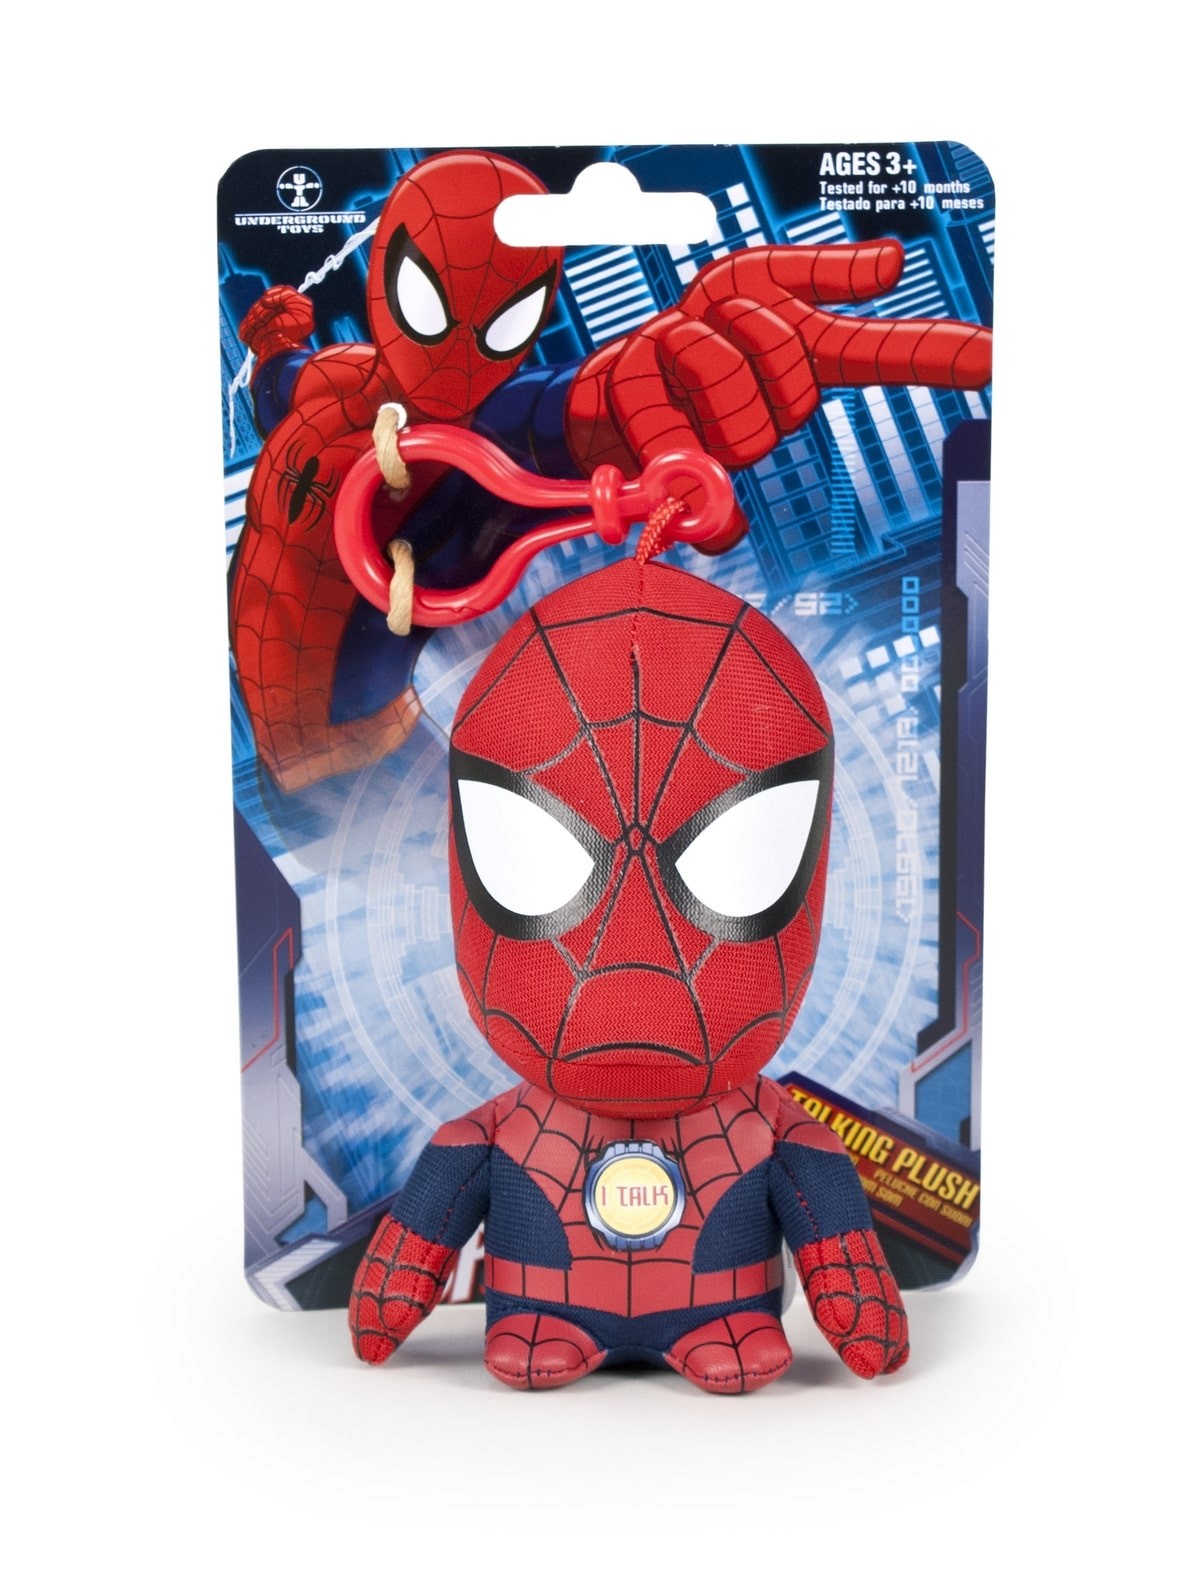 Peluche/llavero Marvel 11cm sonidos - Spiderman